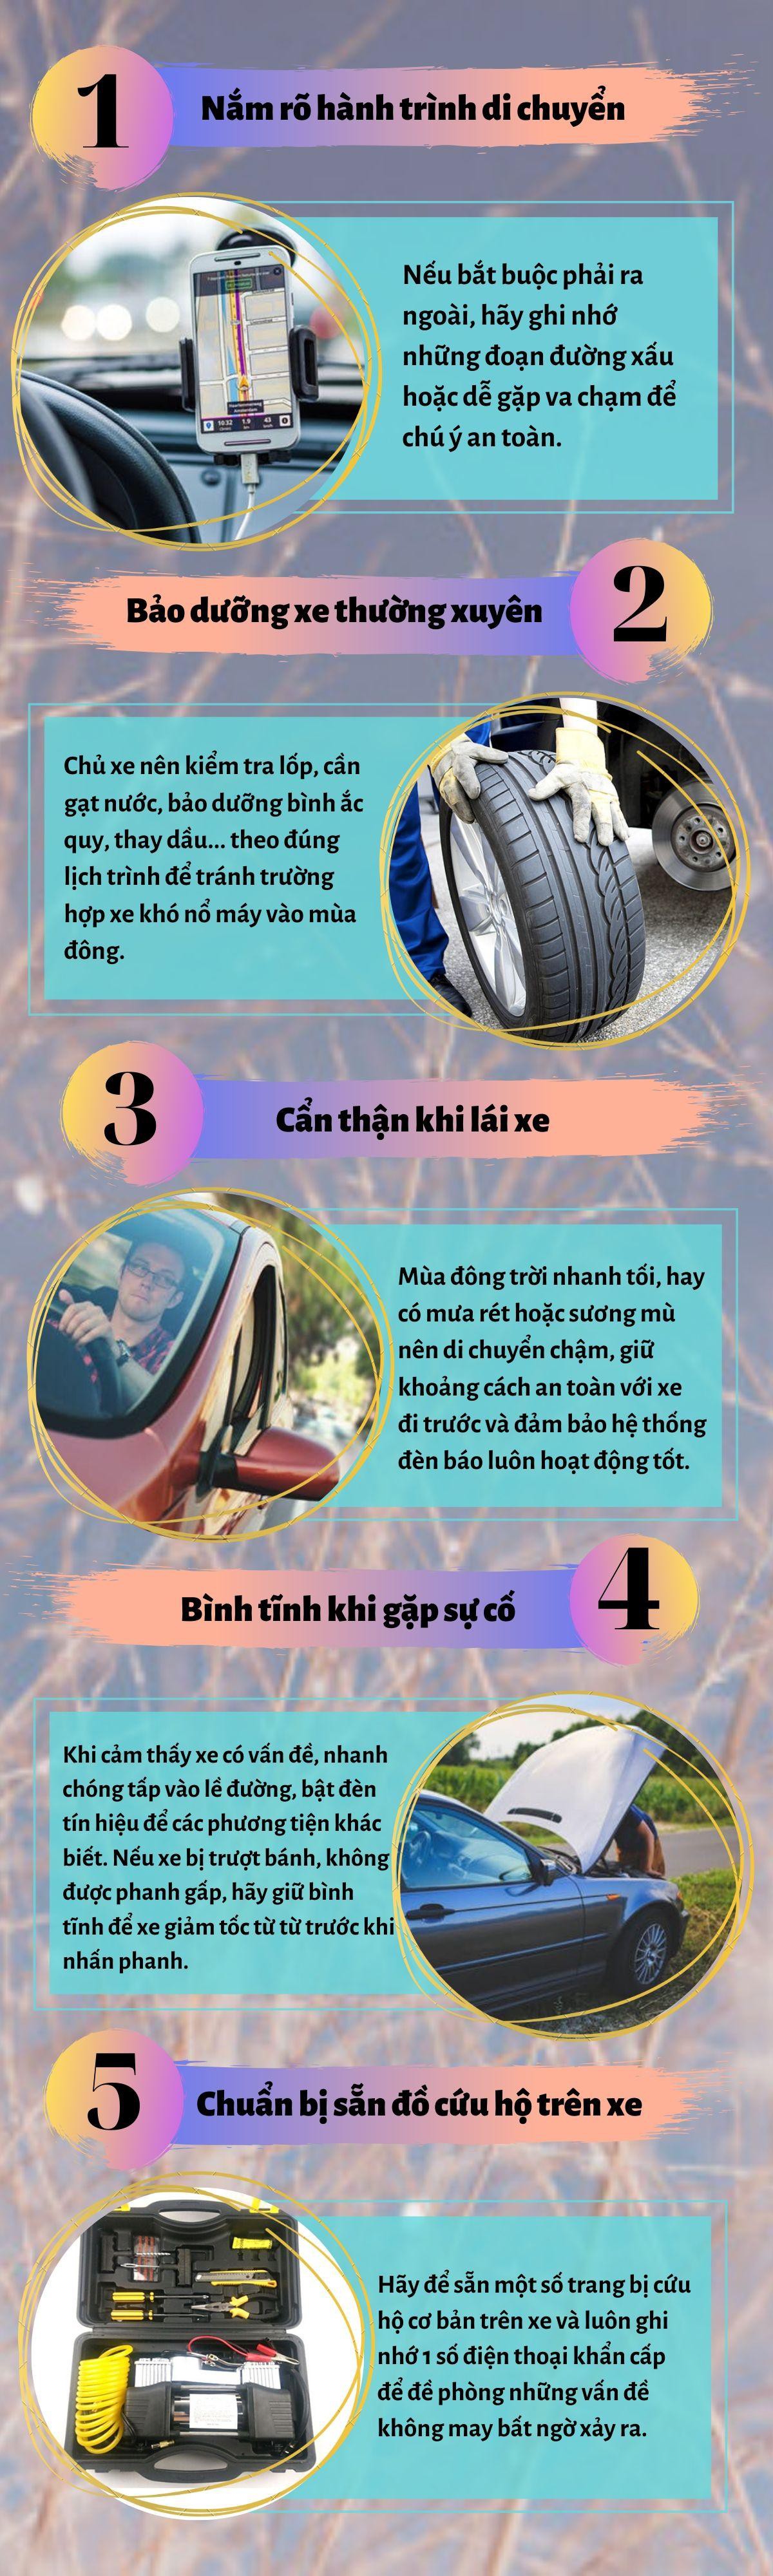 Infographic: 5 lưu ý giúp ô tô di chuyển an toàn vào mùa đông Ảnh 1